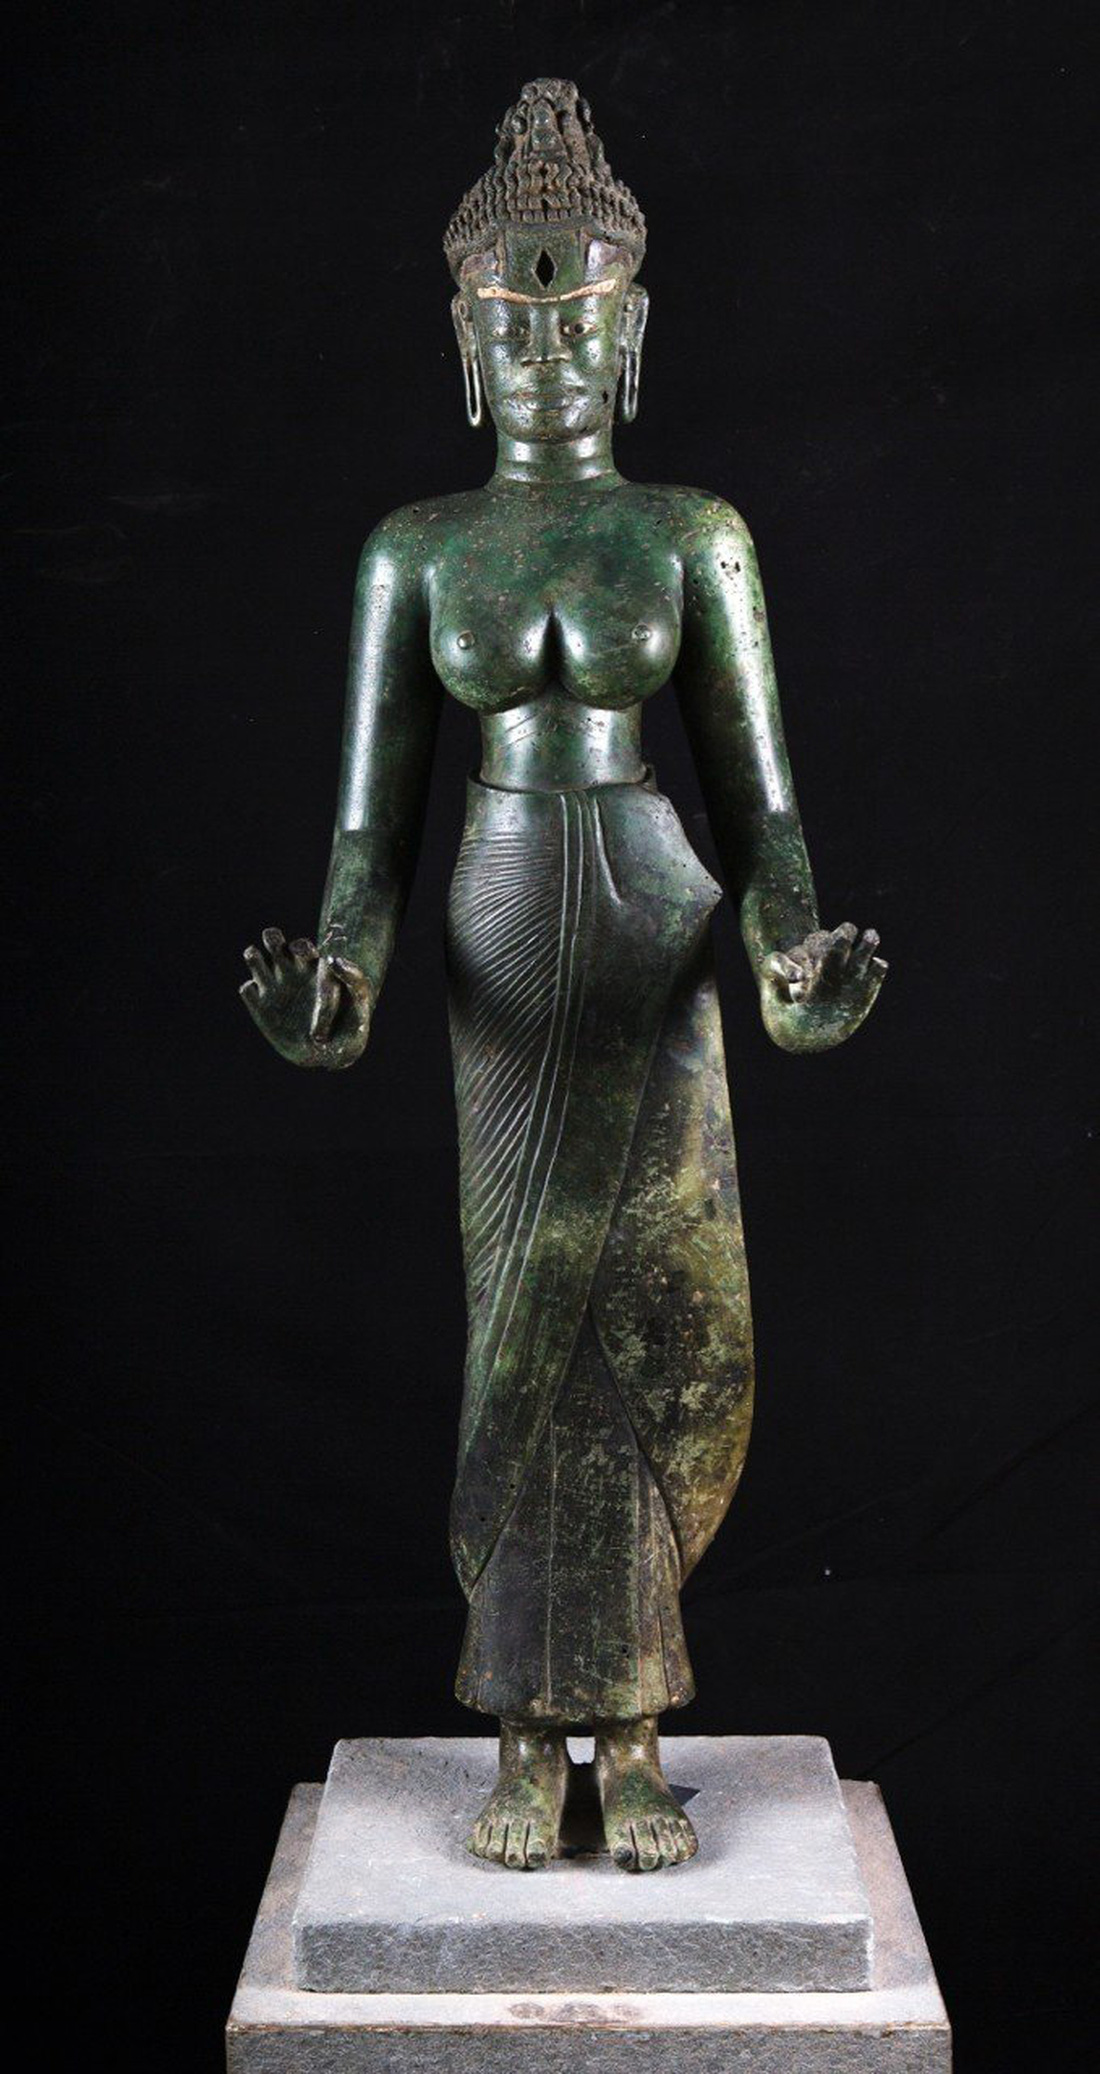 Tượng Bồ tát Tara Đồng Dương có tuổi đời 1.200 năm hiện bảo quản tại Bảo tàng Điêu khắc Chăm Đà Nẵng. Hiếm khi công chúng được thấy tượng gốc - Ảnh: Paisarn Piammattawat, Bangkok